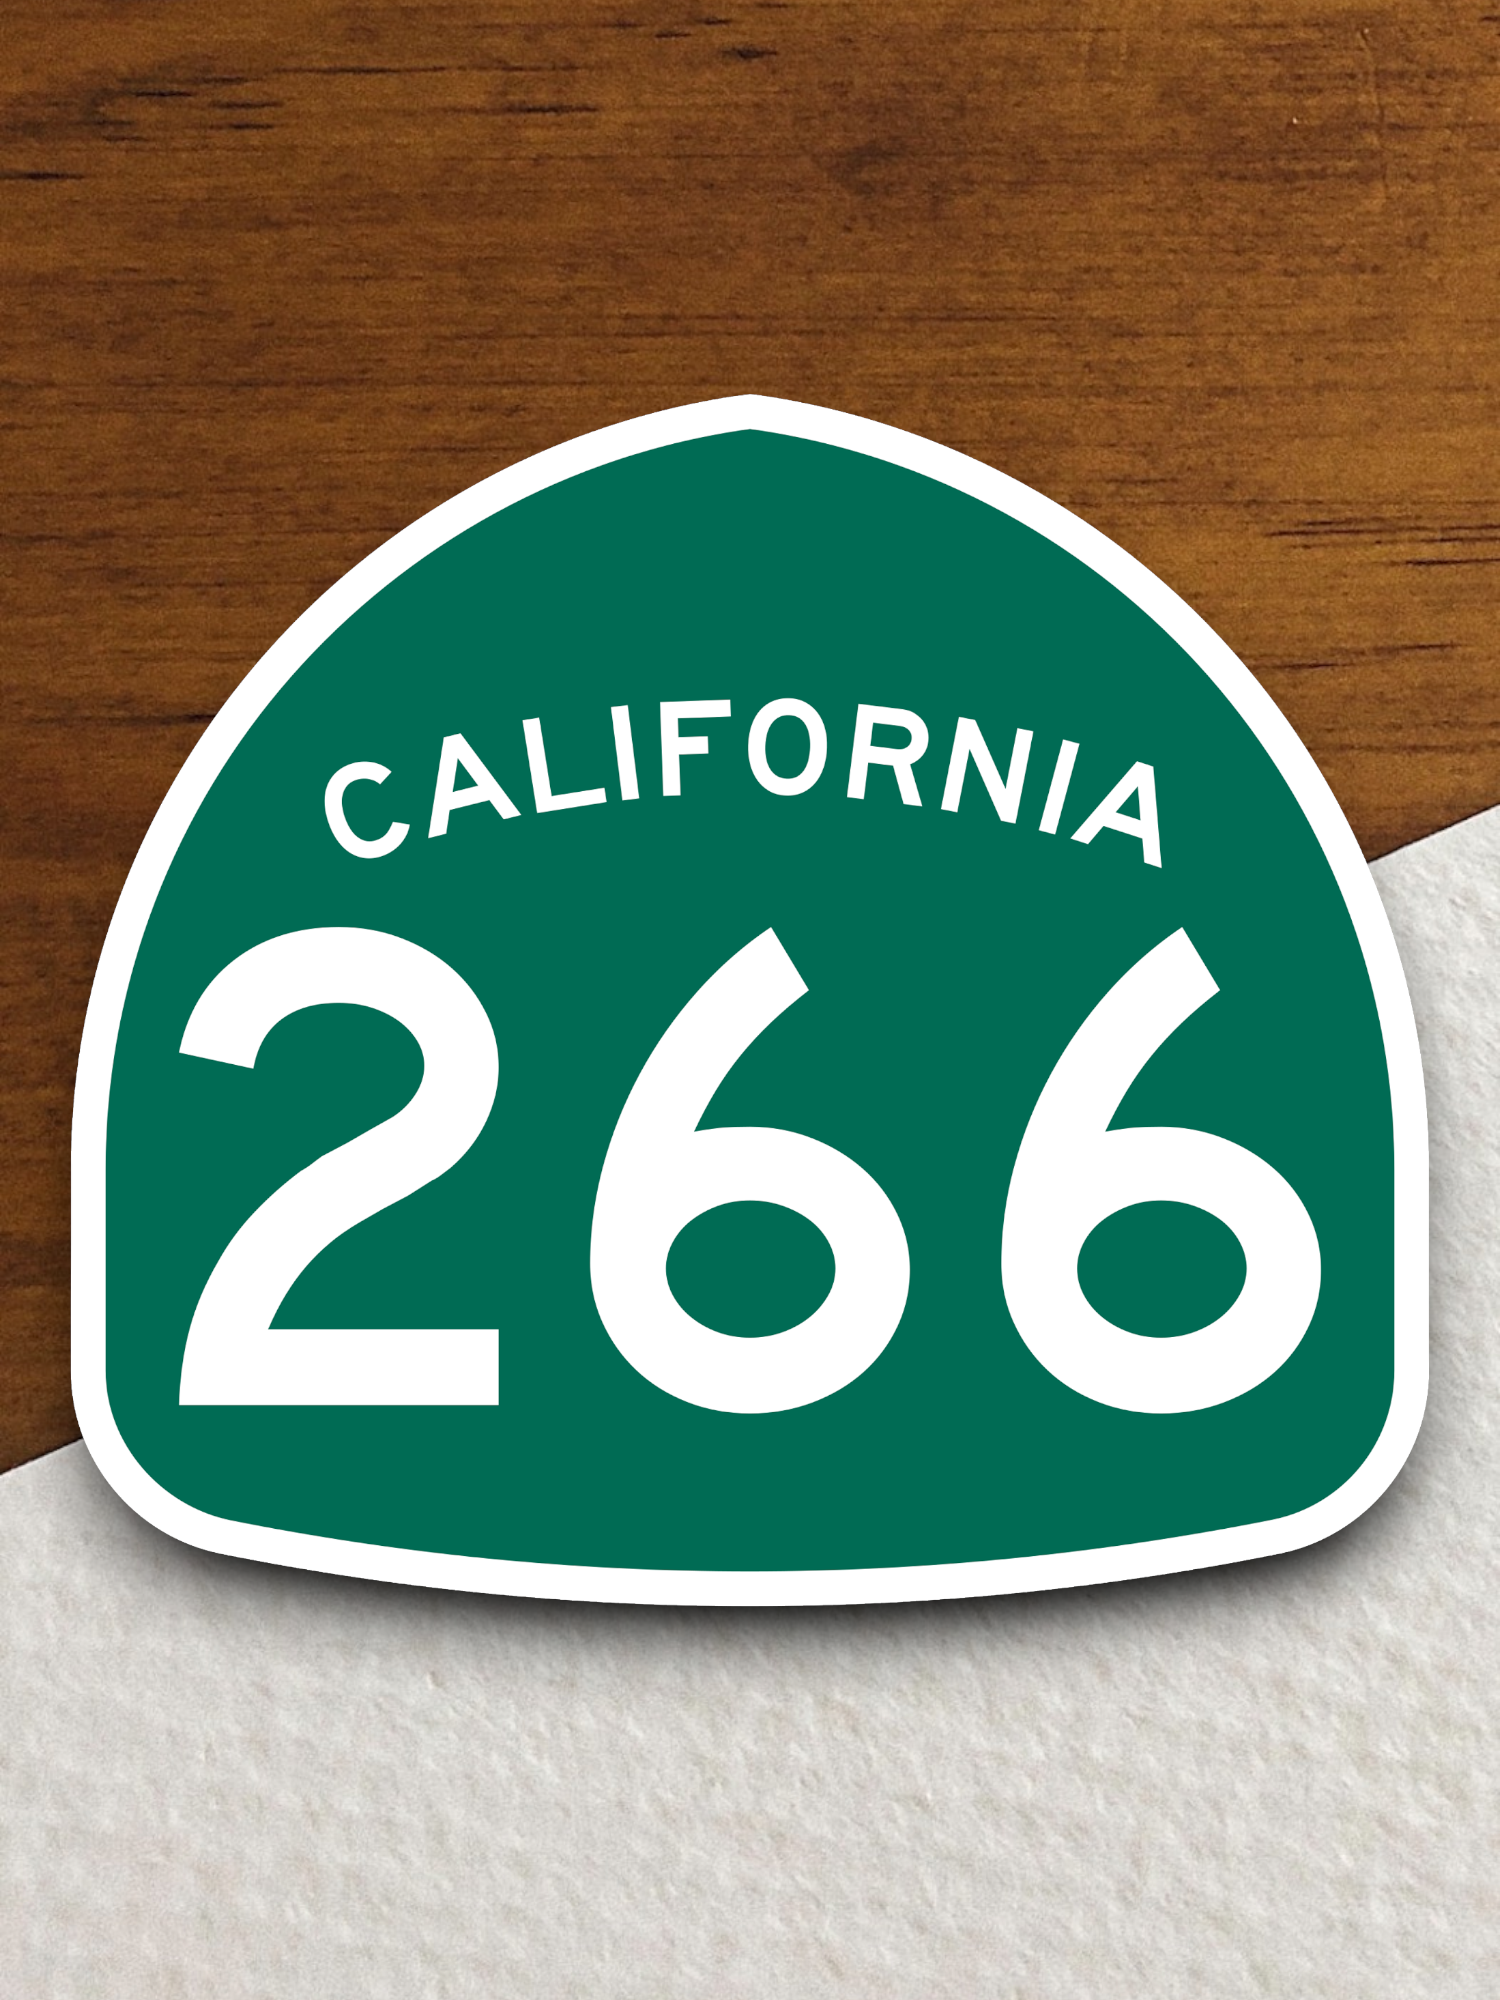 California State Route 266 Sticker